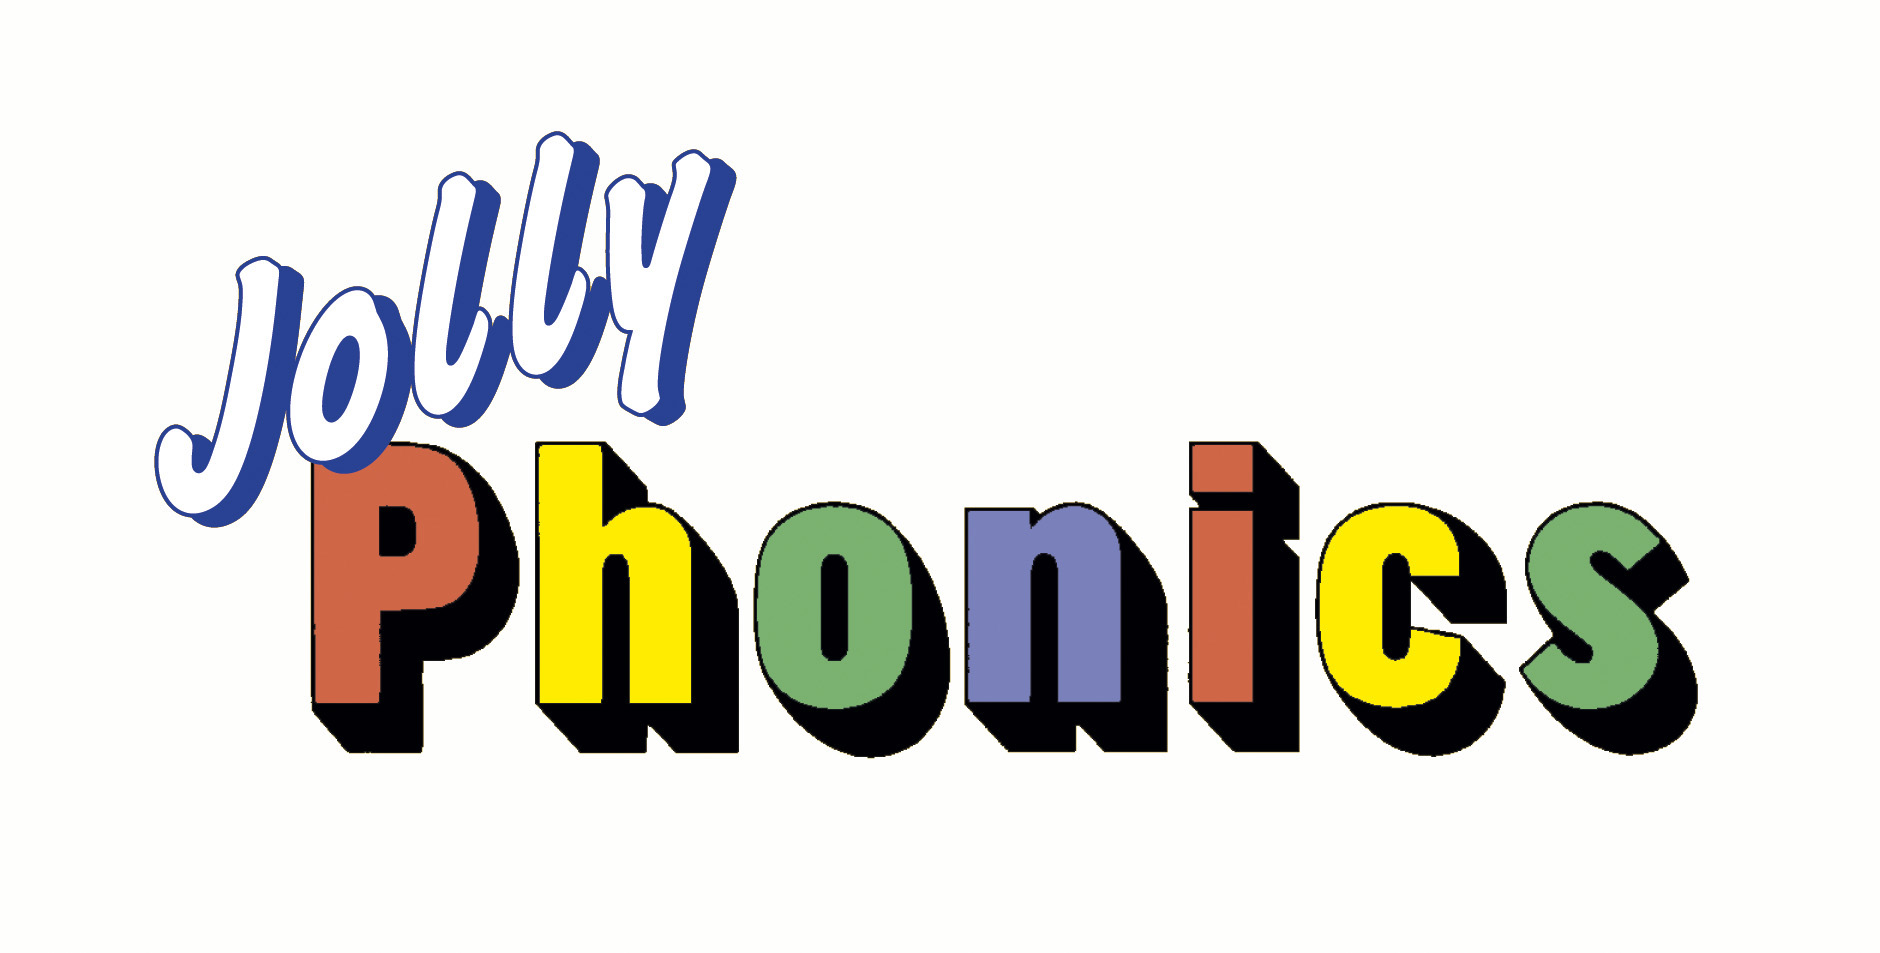 أفضل 5 قنوات يوتيوب لتعليم jolly phonics للأطفال مجاناً!